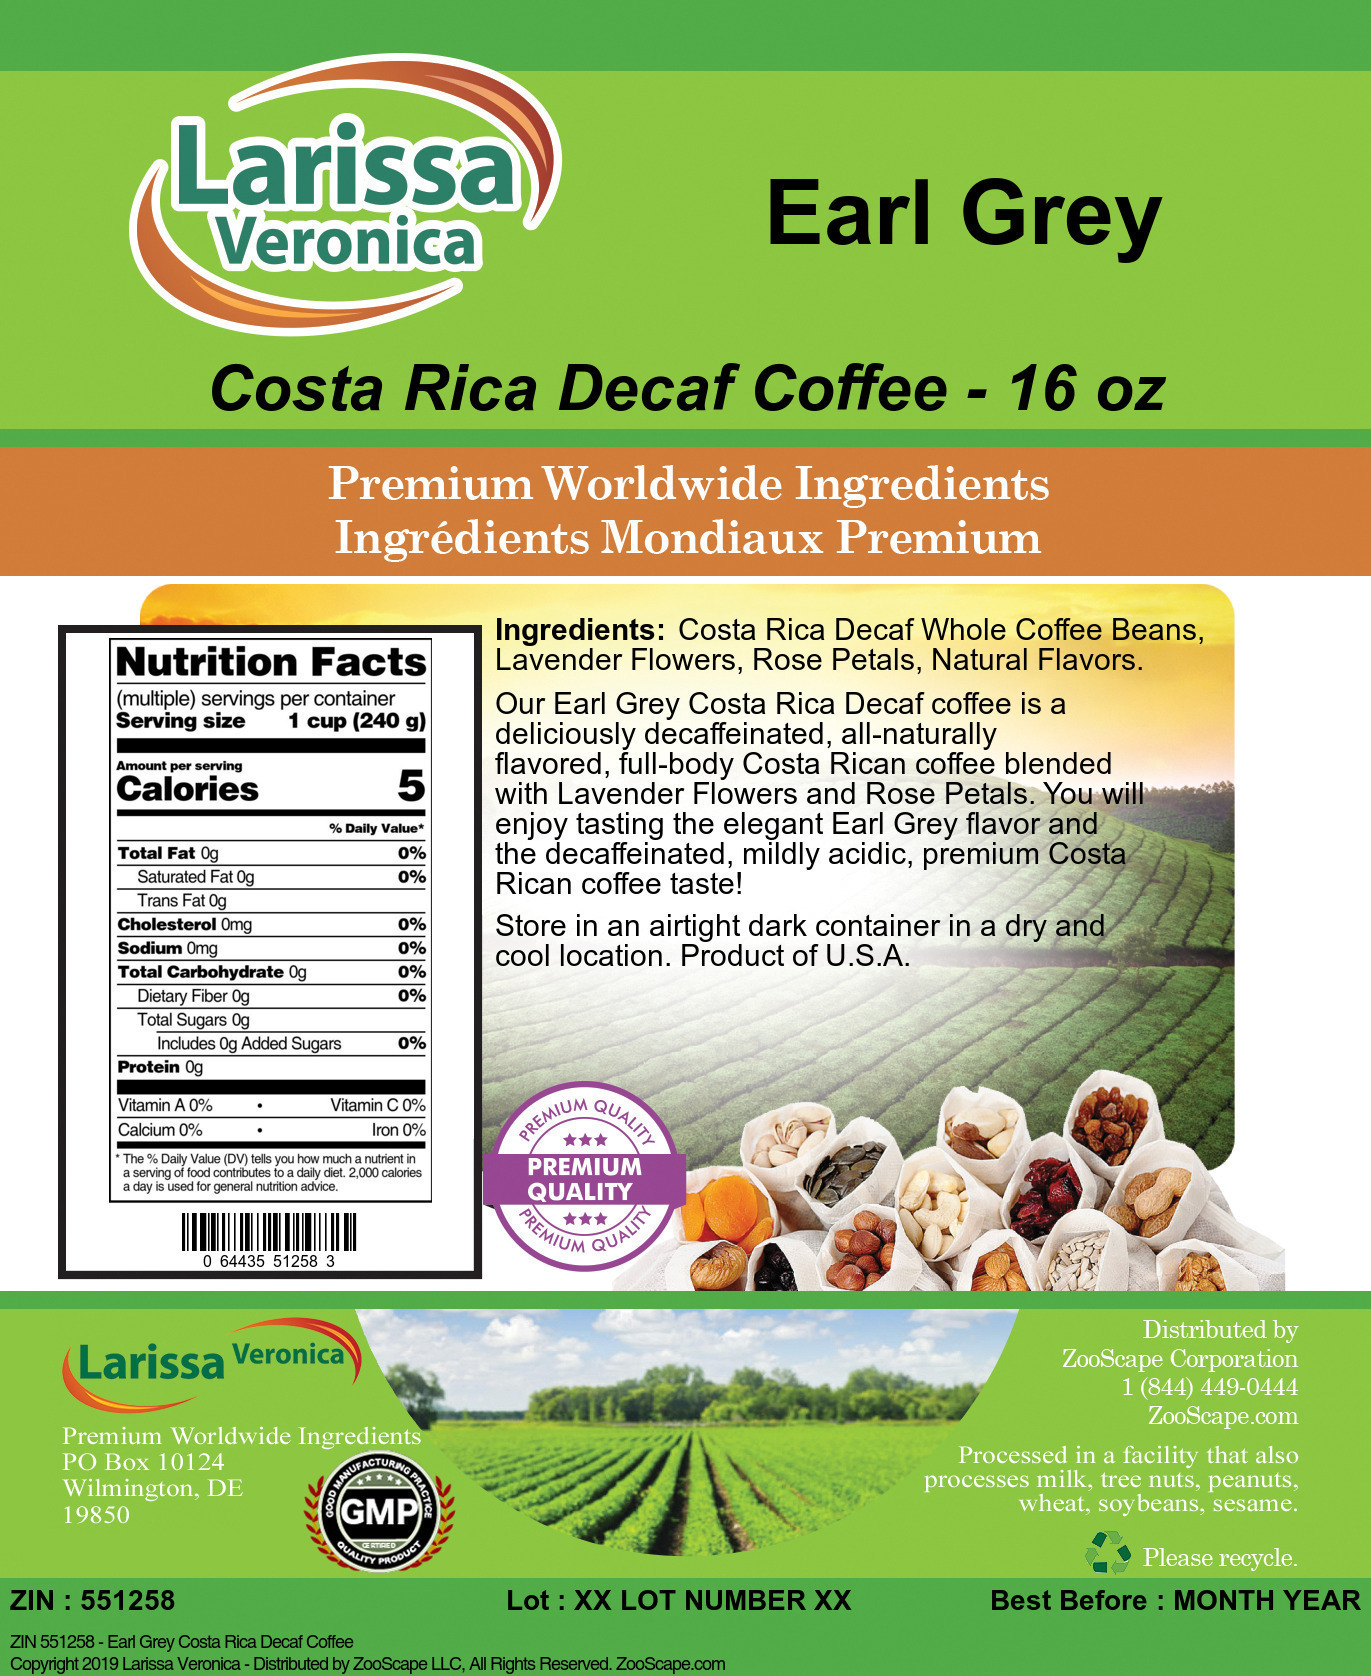 Earl Grey Costa Rica Decaf Coffee - Label